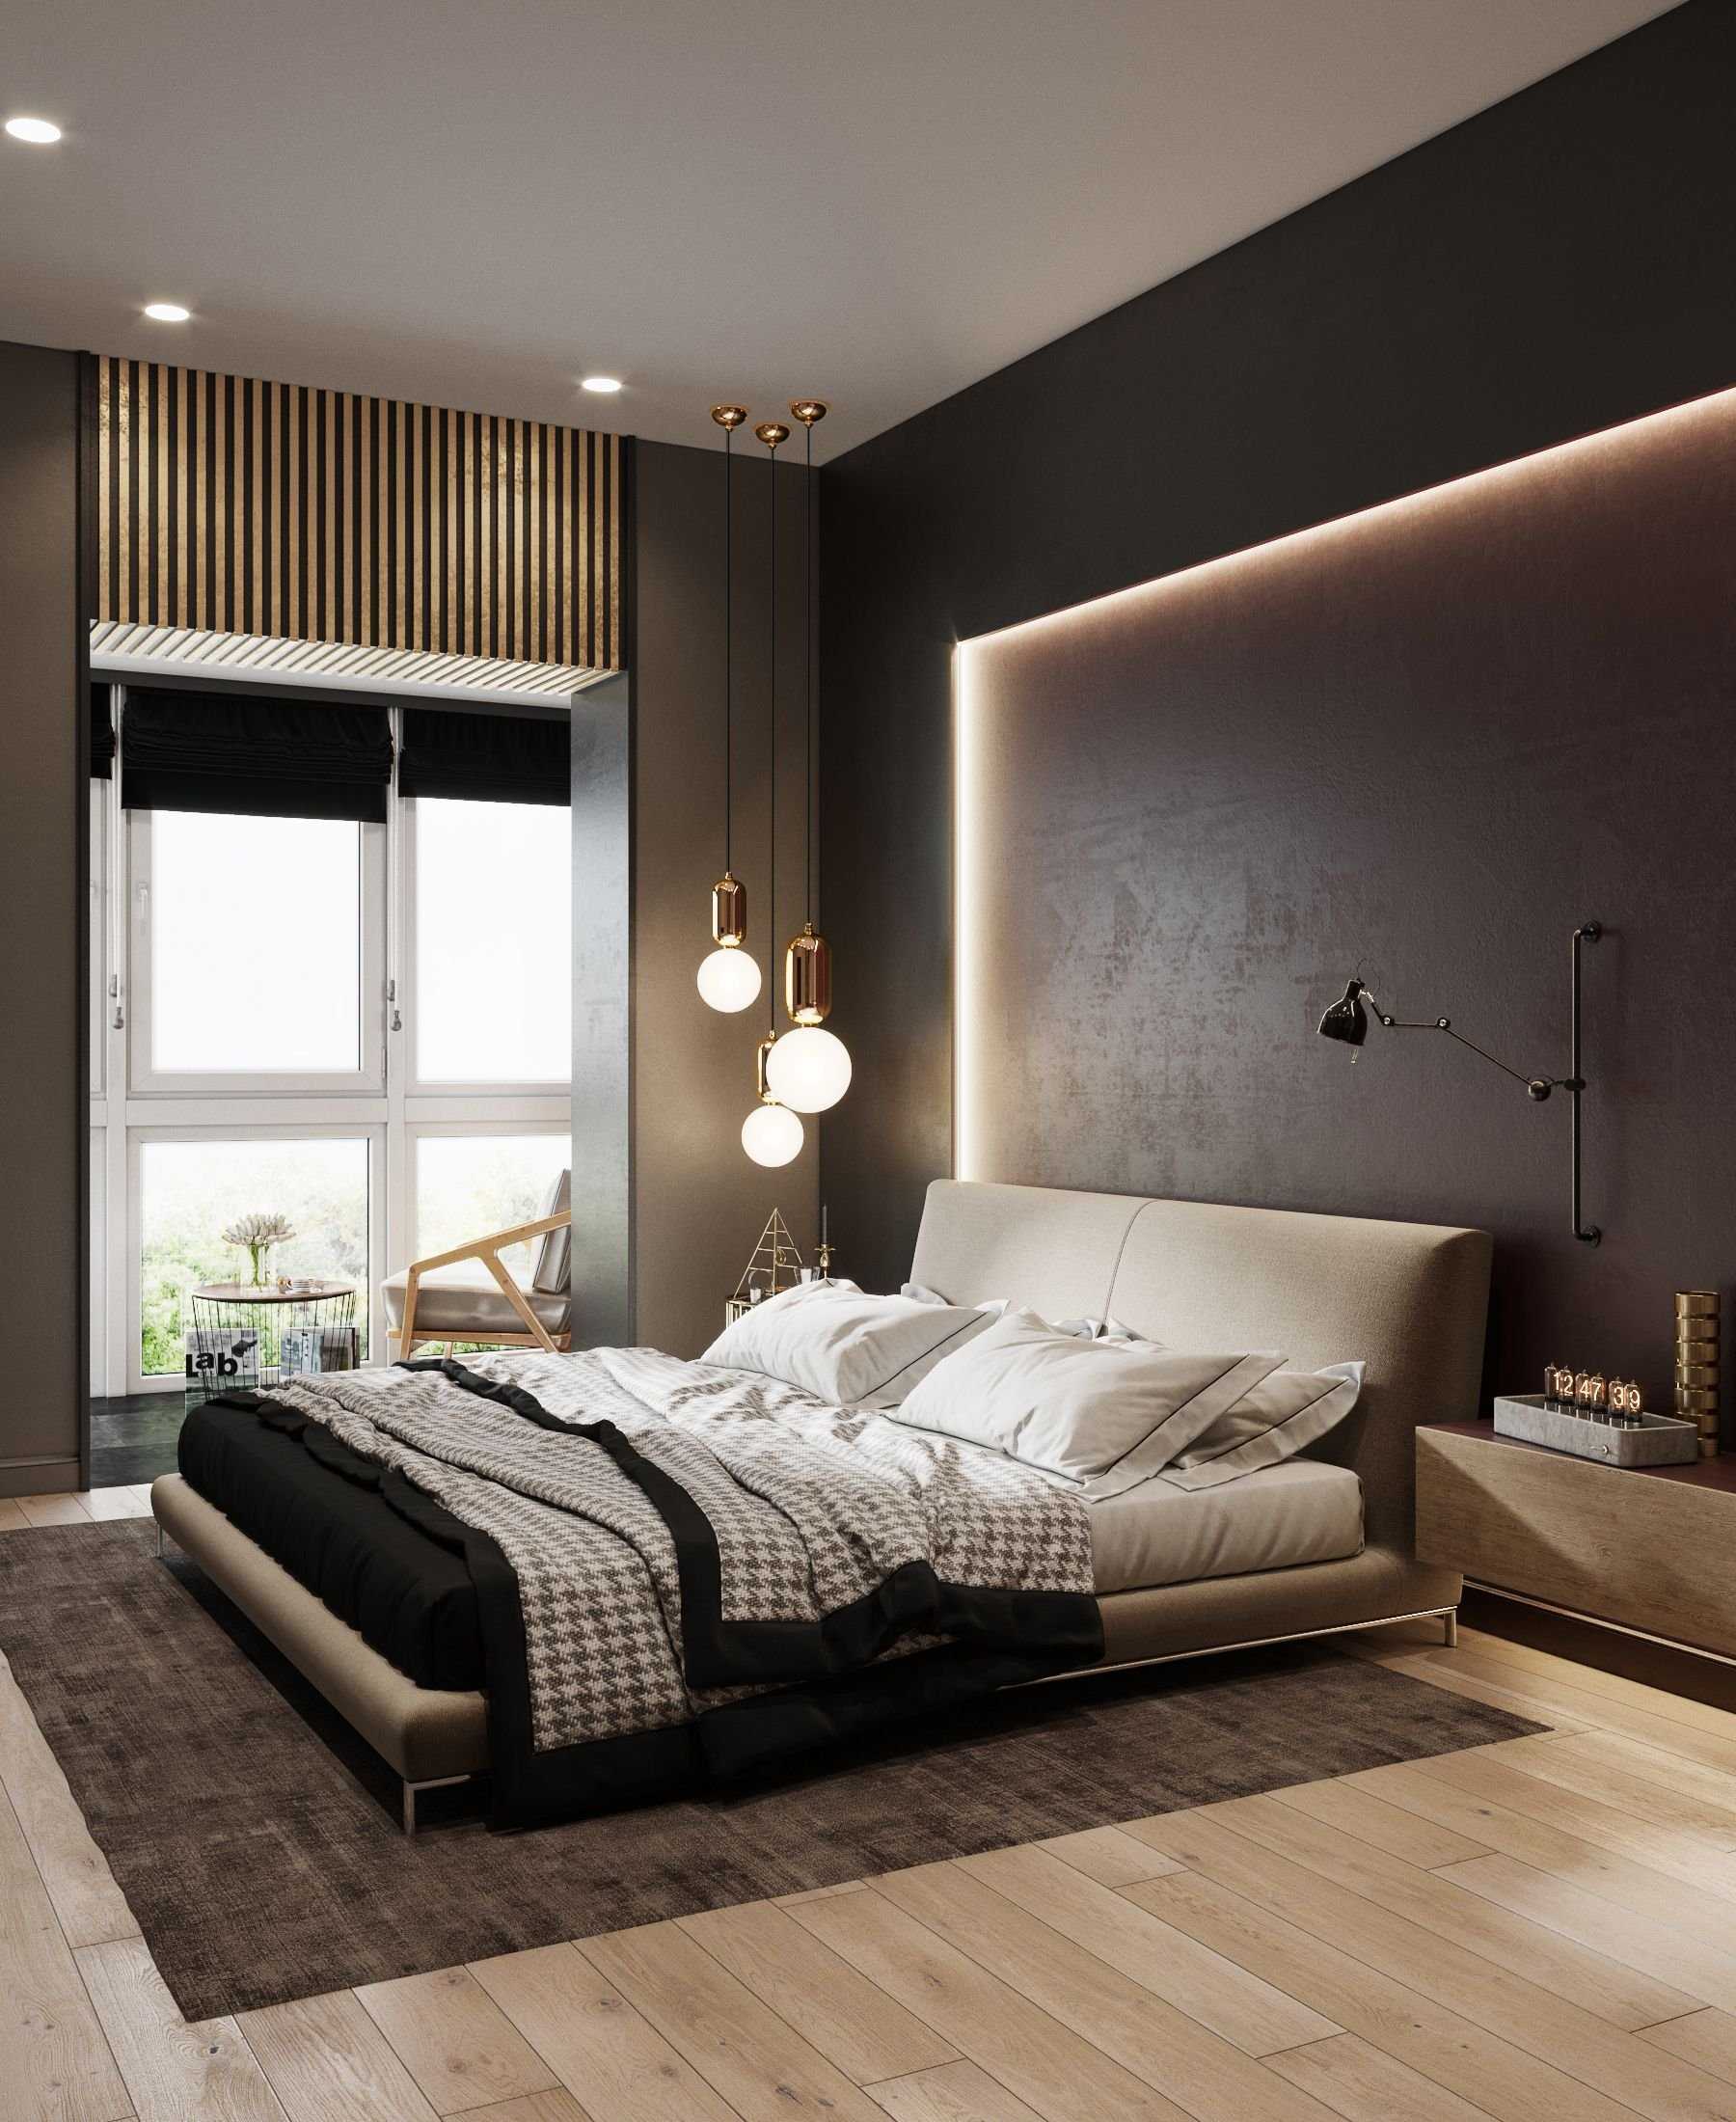 Ламинат на стене в спальне (53 фото): дизайн оригинальной и недорогой отделки в интерьере